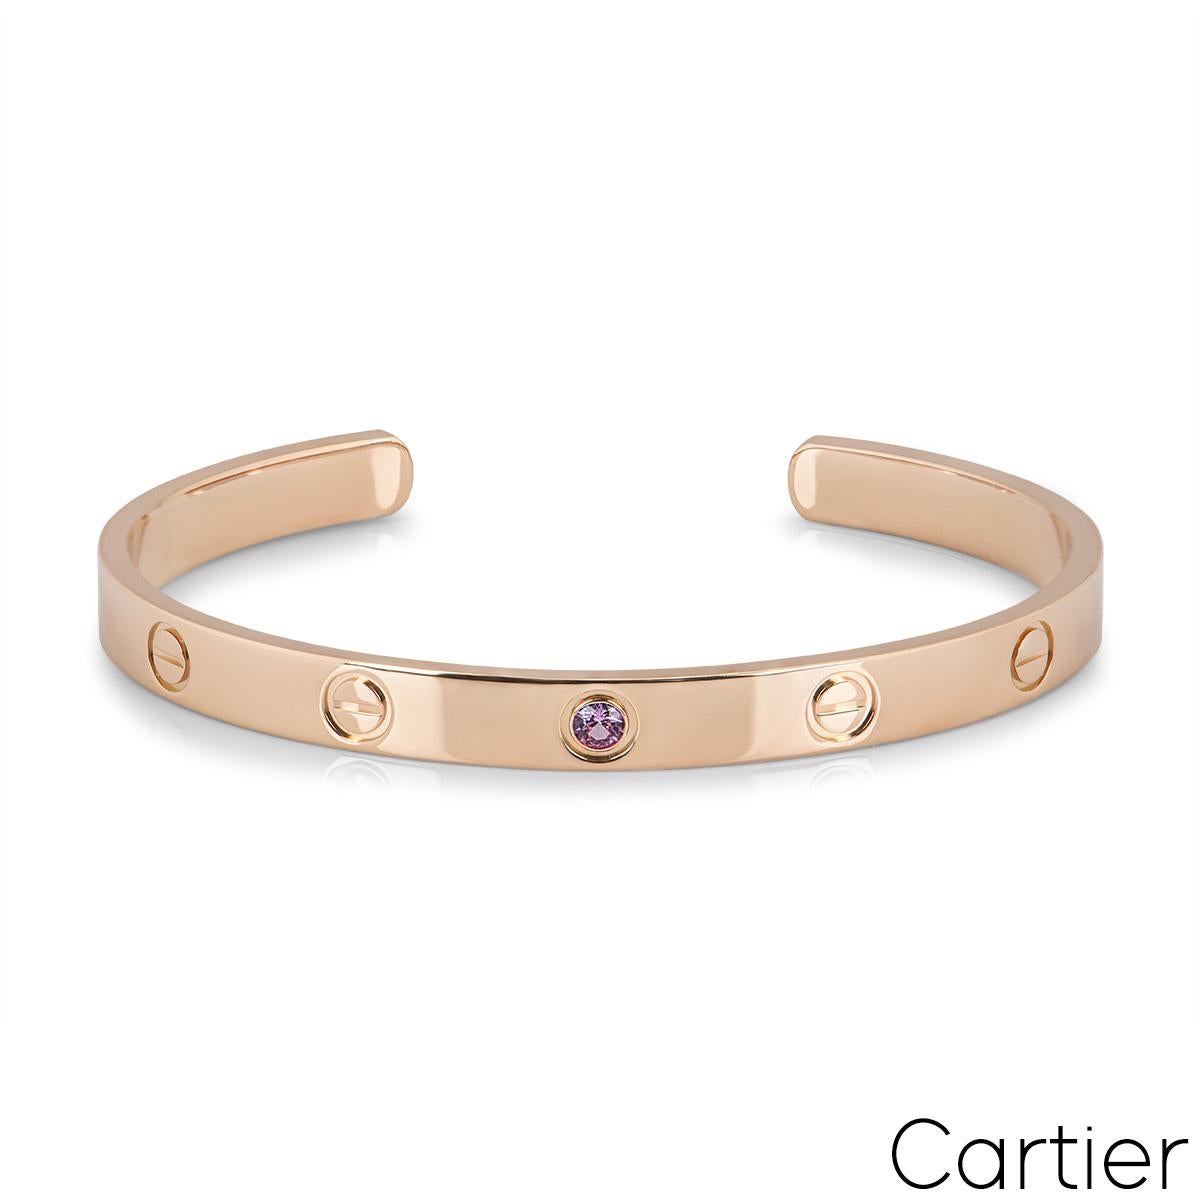 Manschettenarmband aus 18 Karat Roségold von Cartier aus der kultigen Love Collection'S. Dieses Manschettenarmband zeigt das ikonische Schraubenmotiv mit einem einzelnen rosa Saphir in der Mitte. Das Armband hat die Größe 19 und ein Bruttogewicht